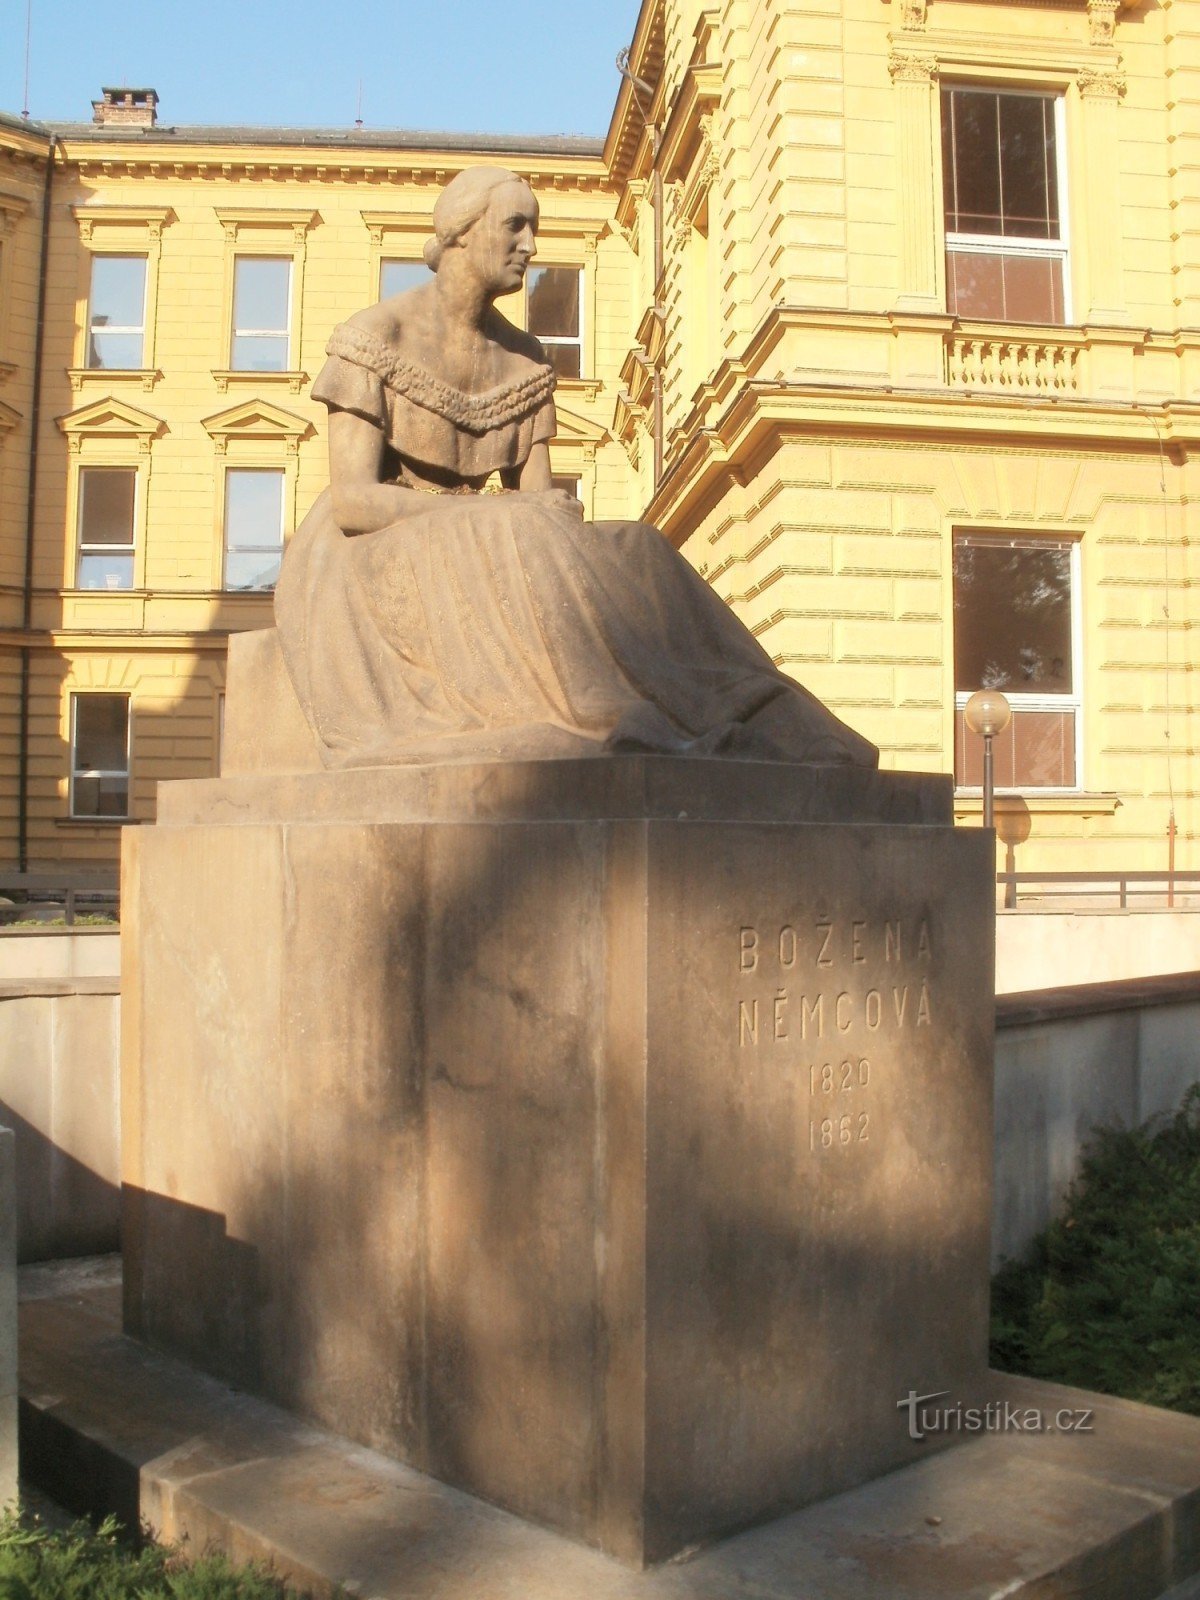 Hradec Králové - statue af Božena Němcová